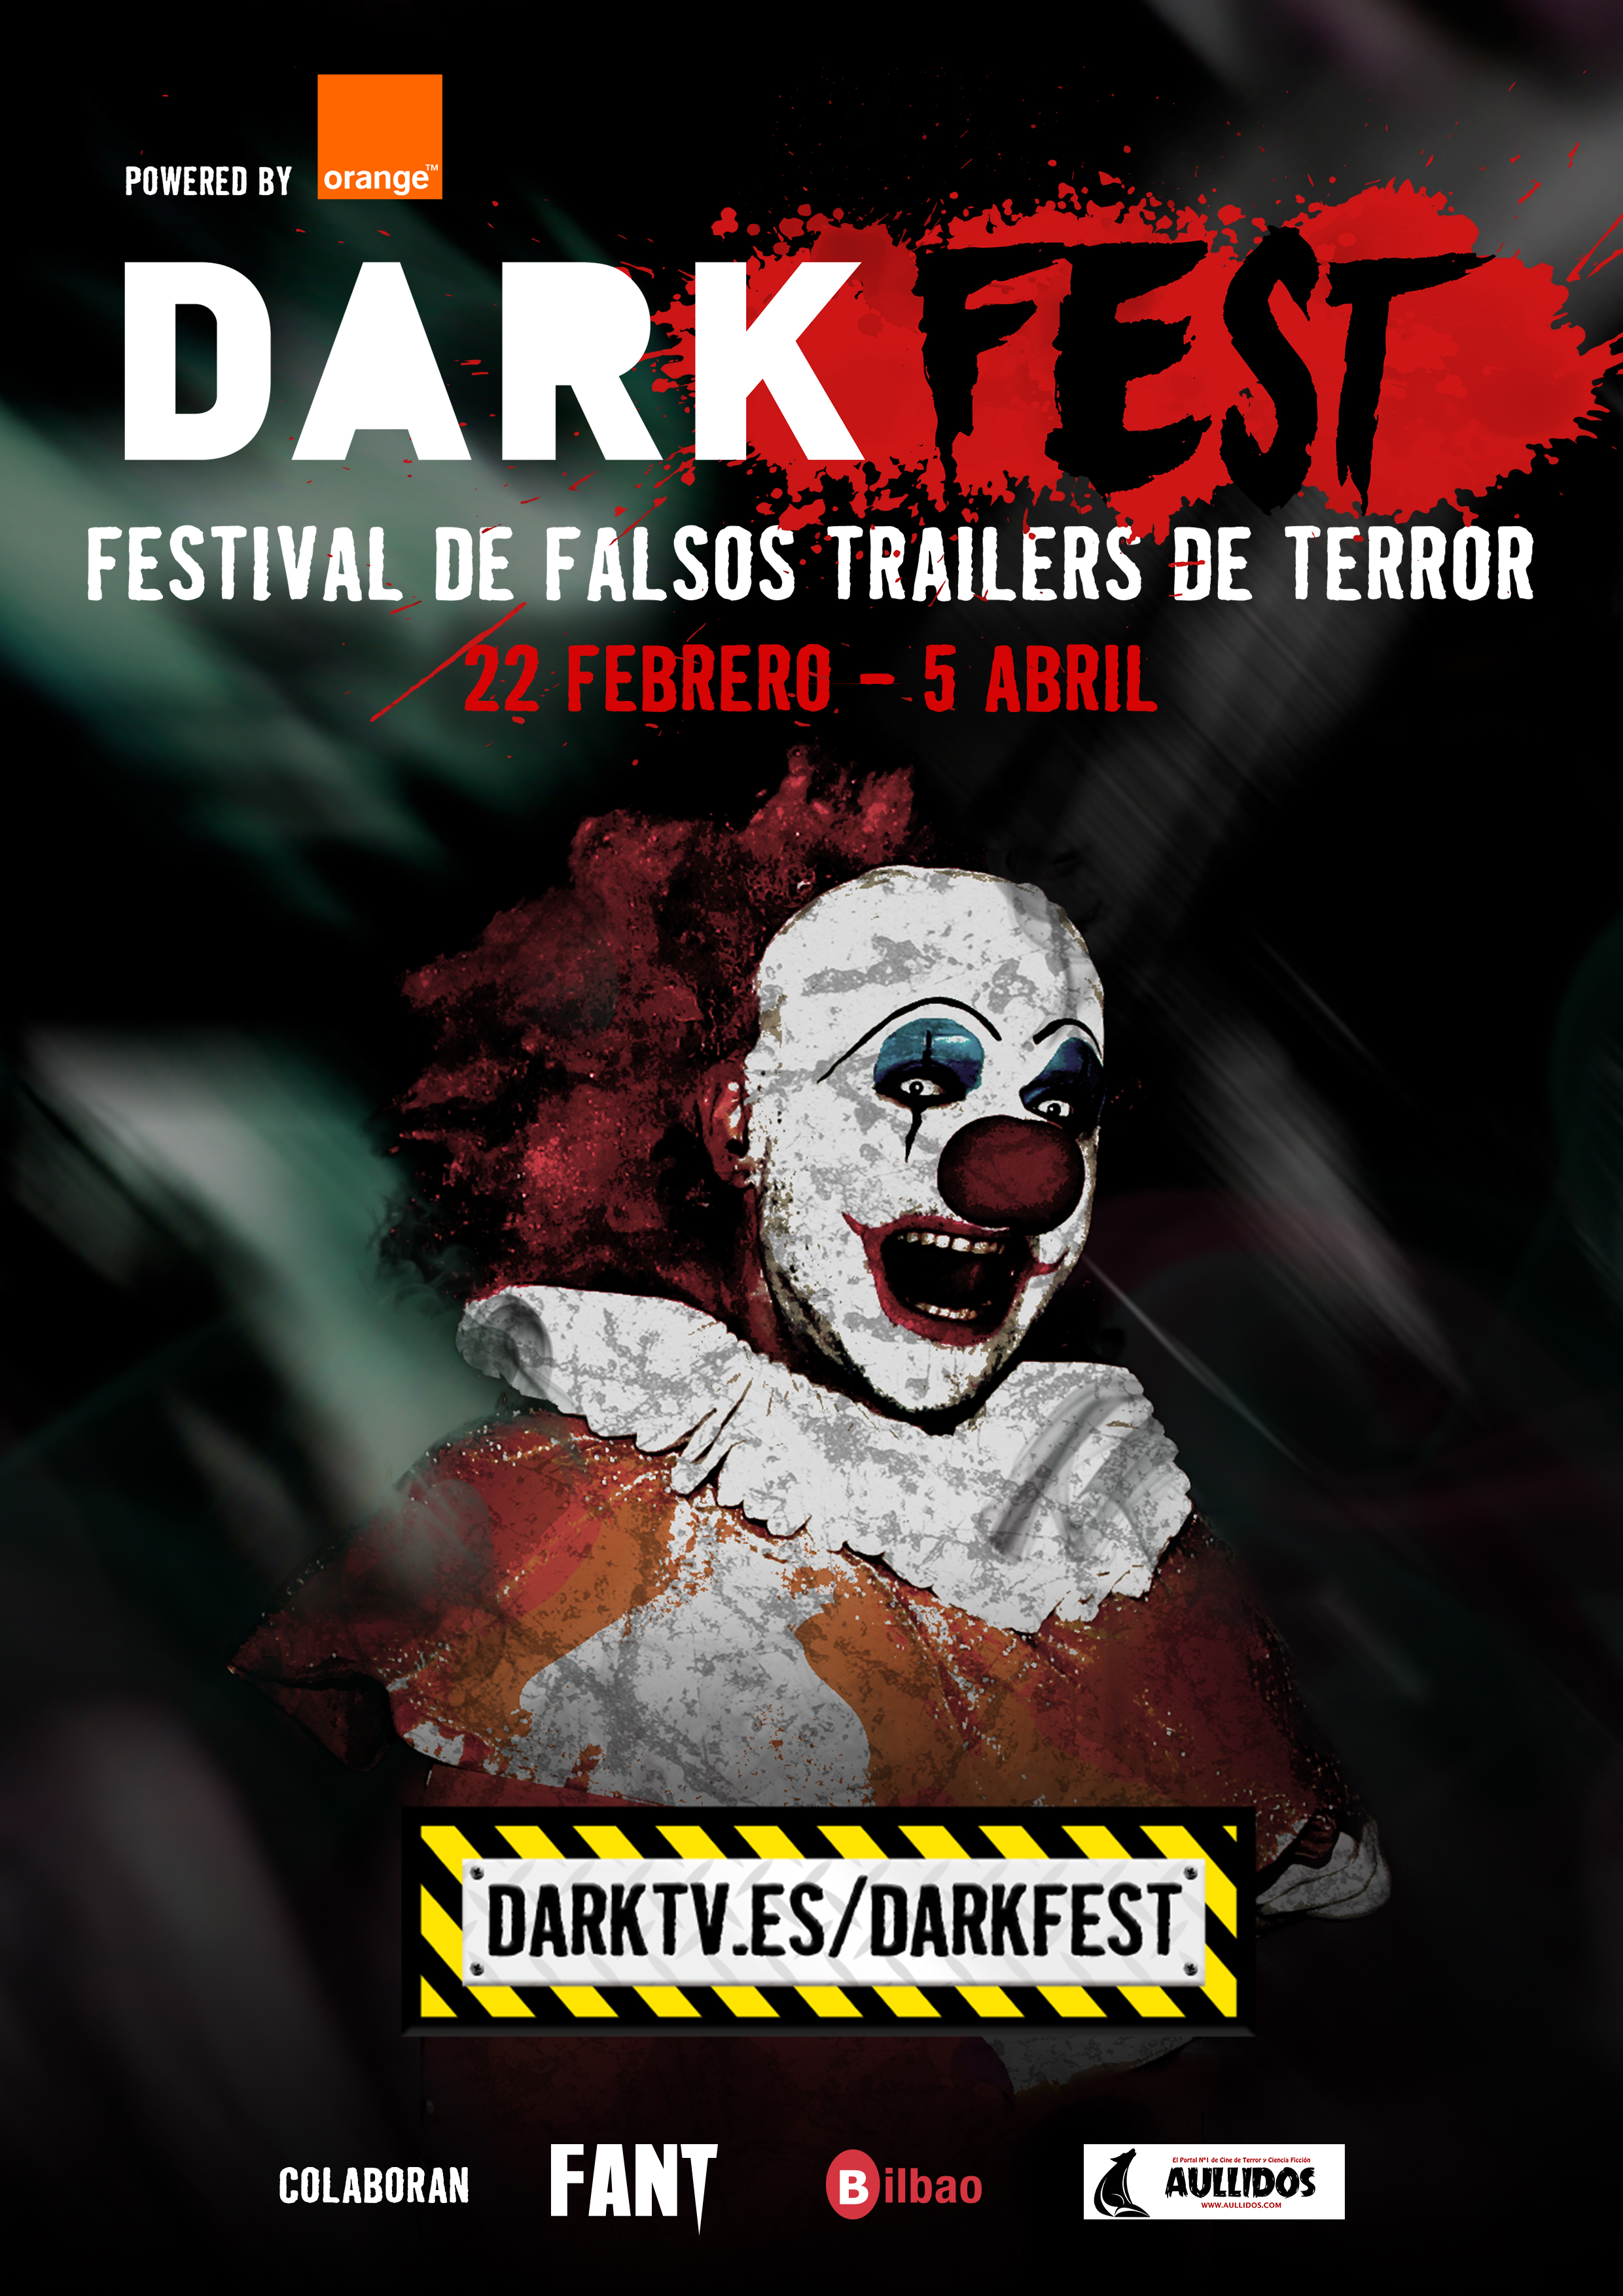 Darkfest 02